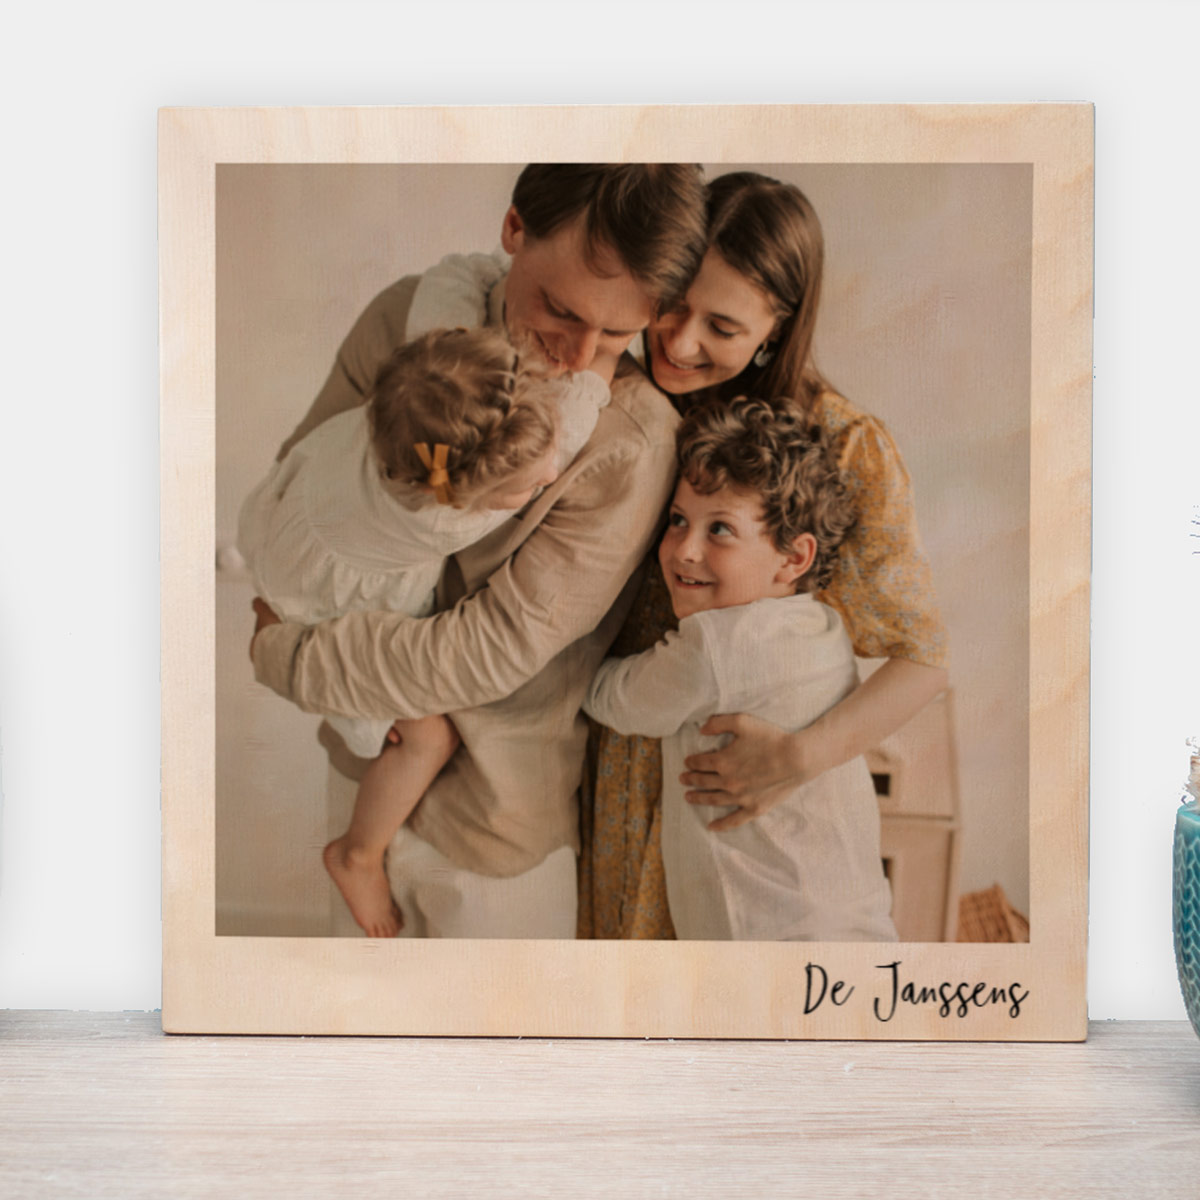 Stampa su Legno con Foto in Stile Polaroid Valentinstag Personalizzabile Regali Romantici Regali di Matrimonio